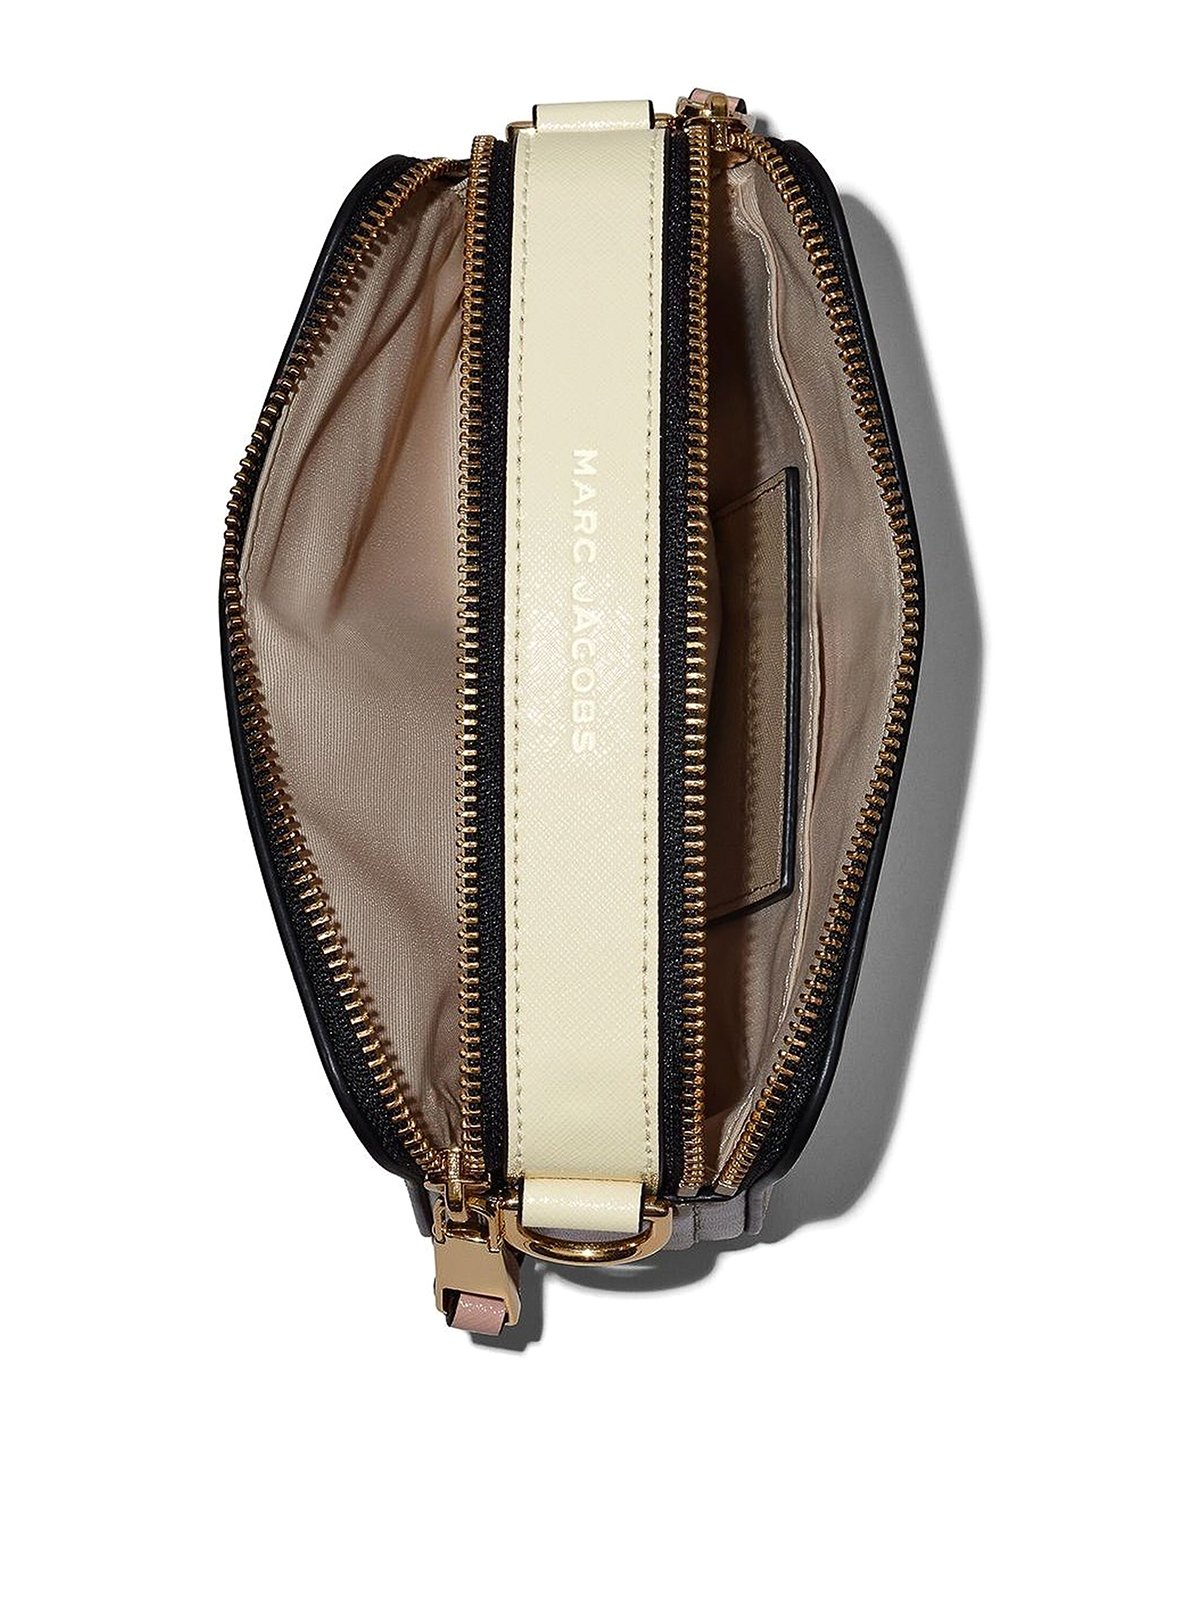 Marc Jacobs Snapshot Shoulder Clutch Camera Bag Beige Brown